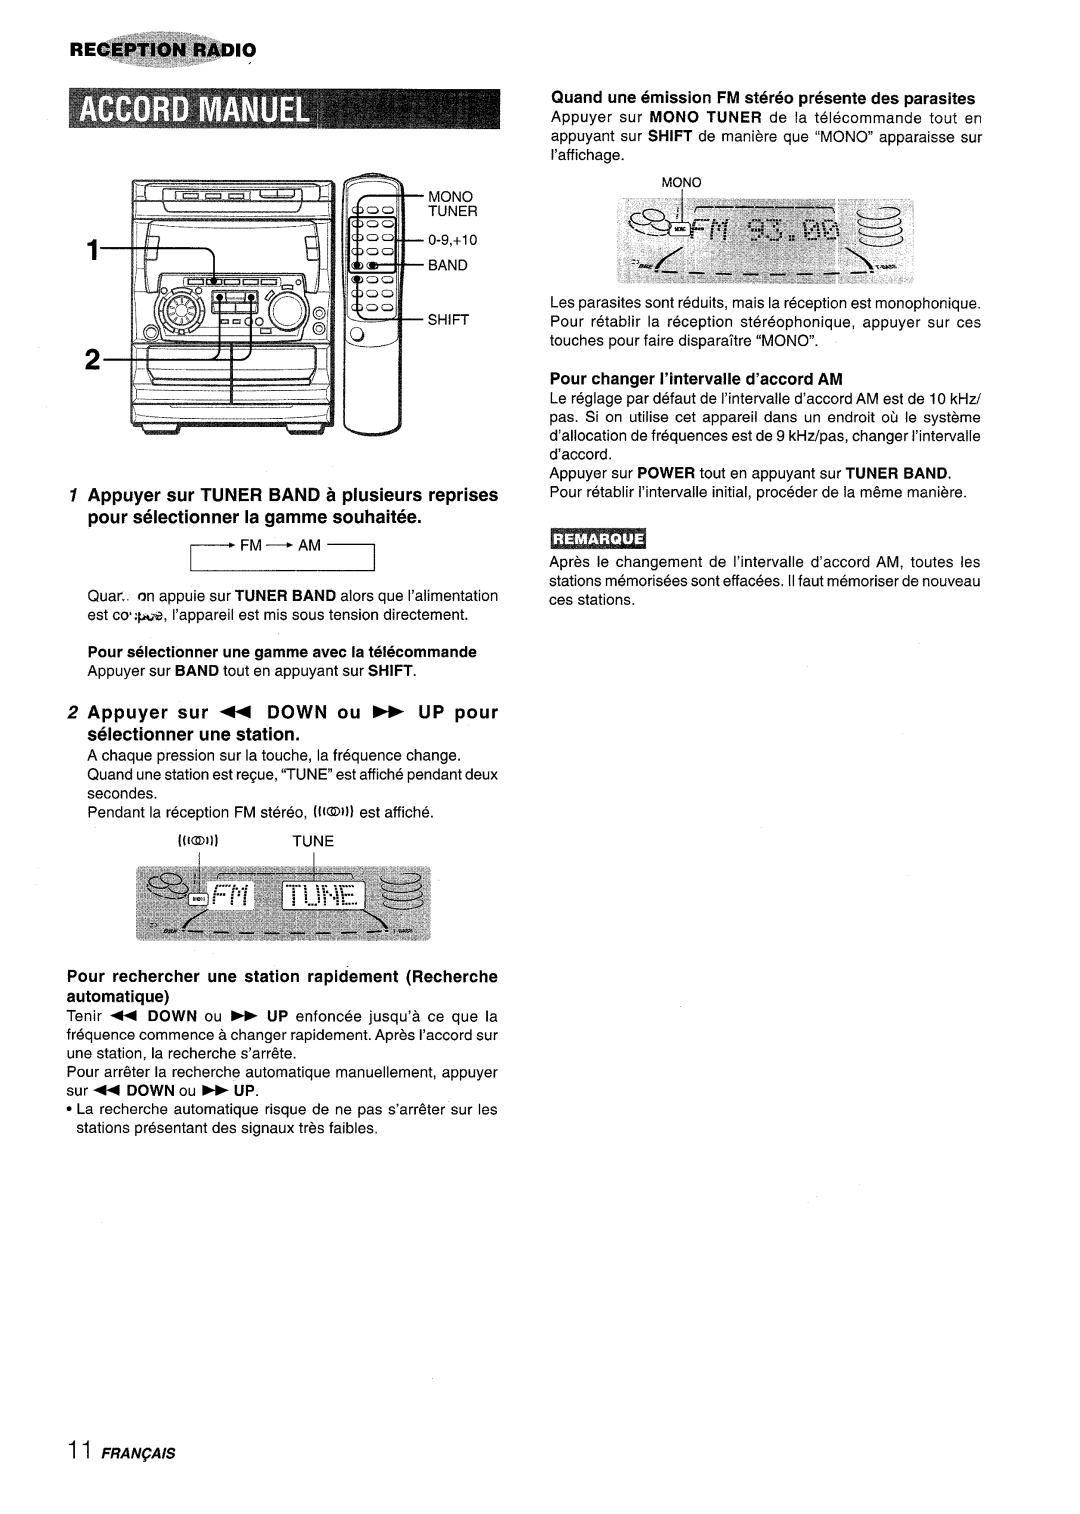 Sony NSX-A707 manual Fm - Am, Appuyer sur + DOWN ou - UP pour selectionner une station, r---1 